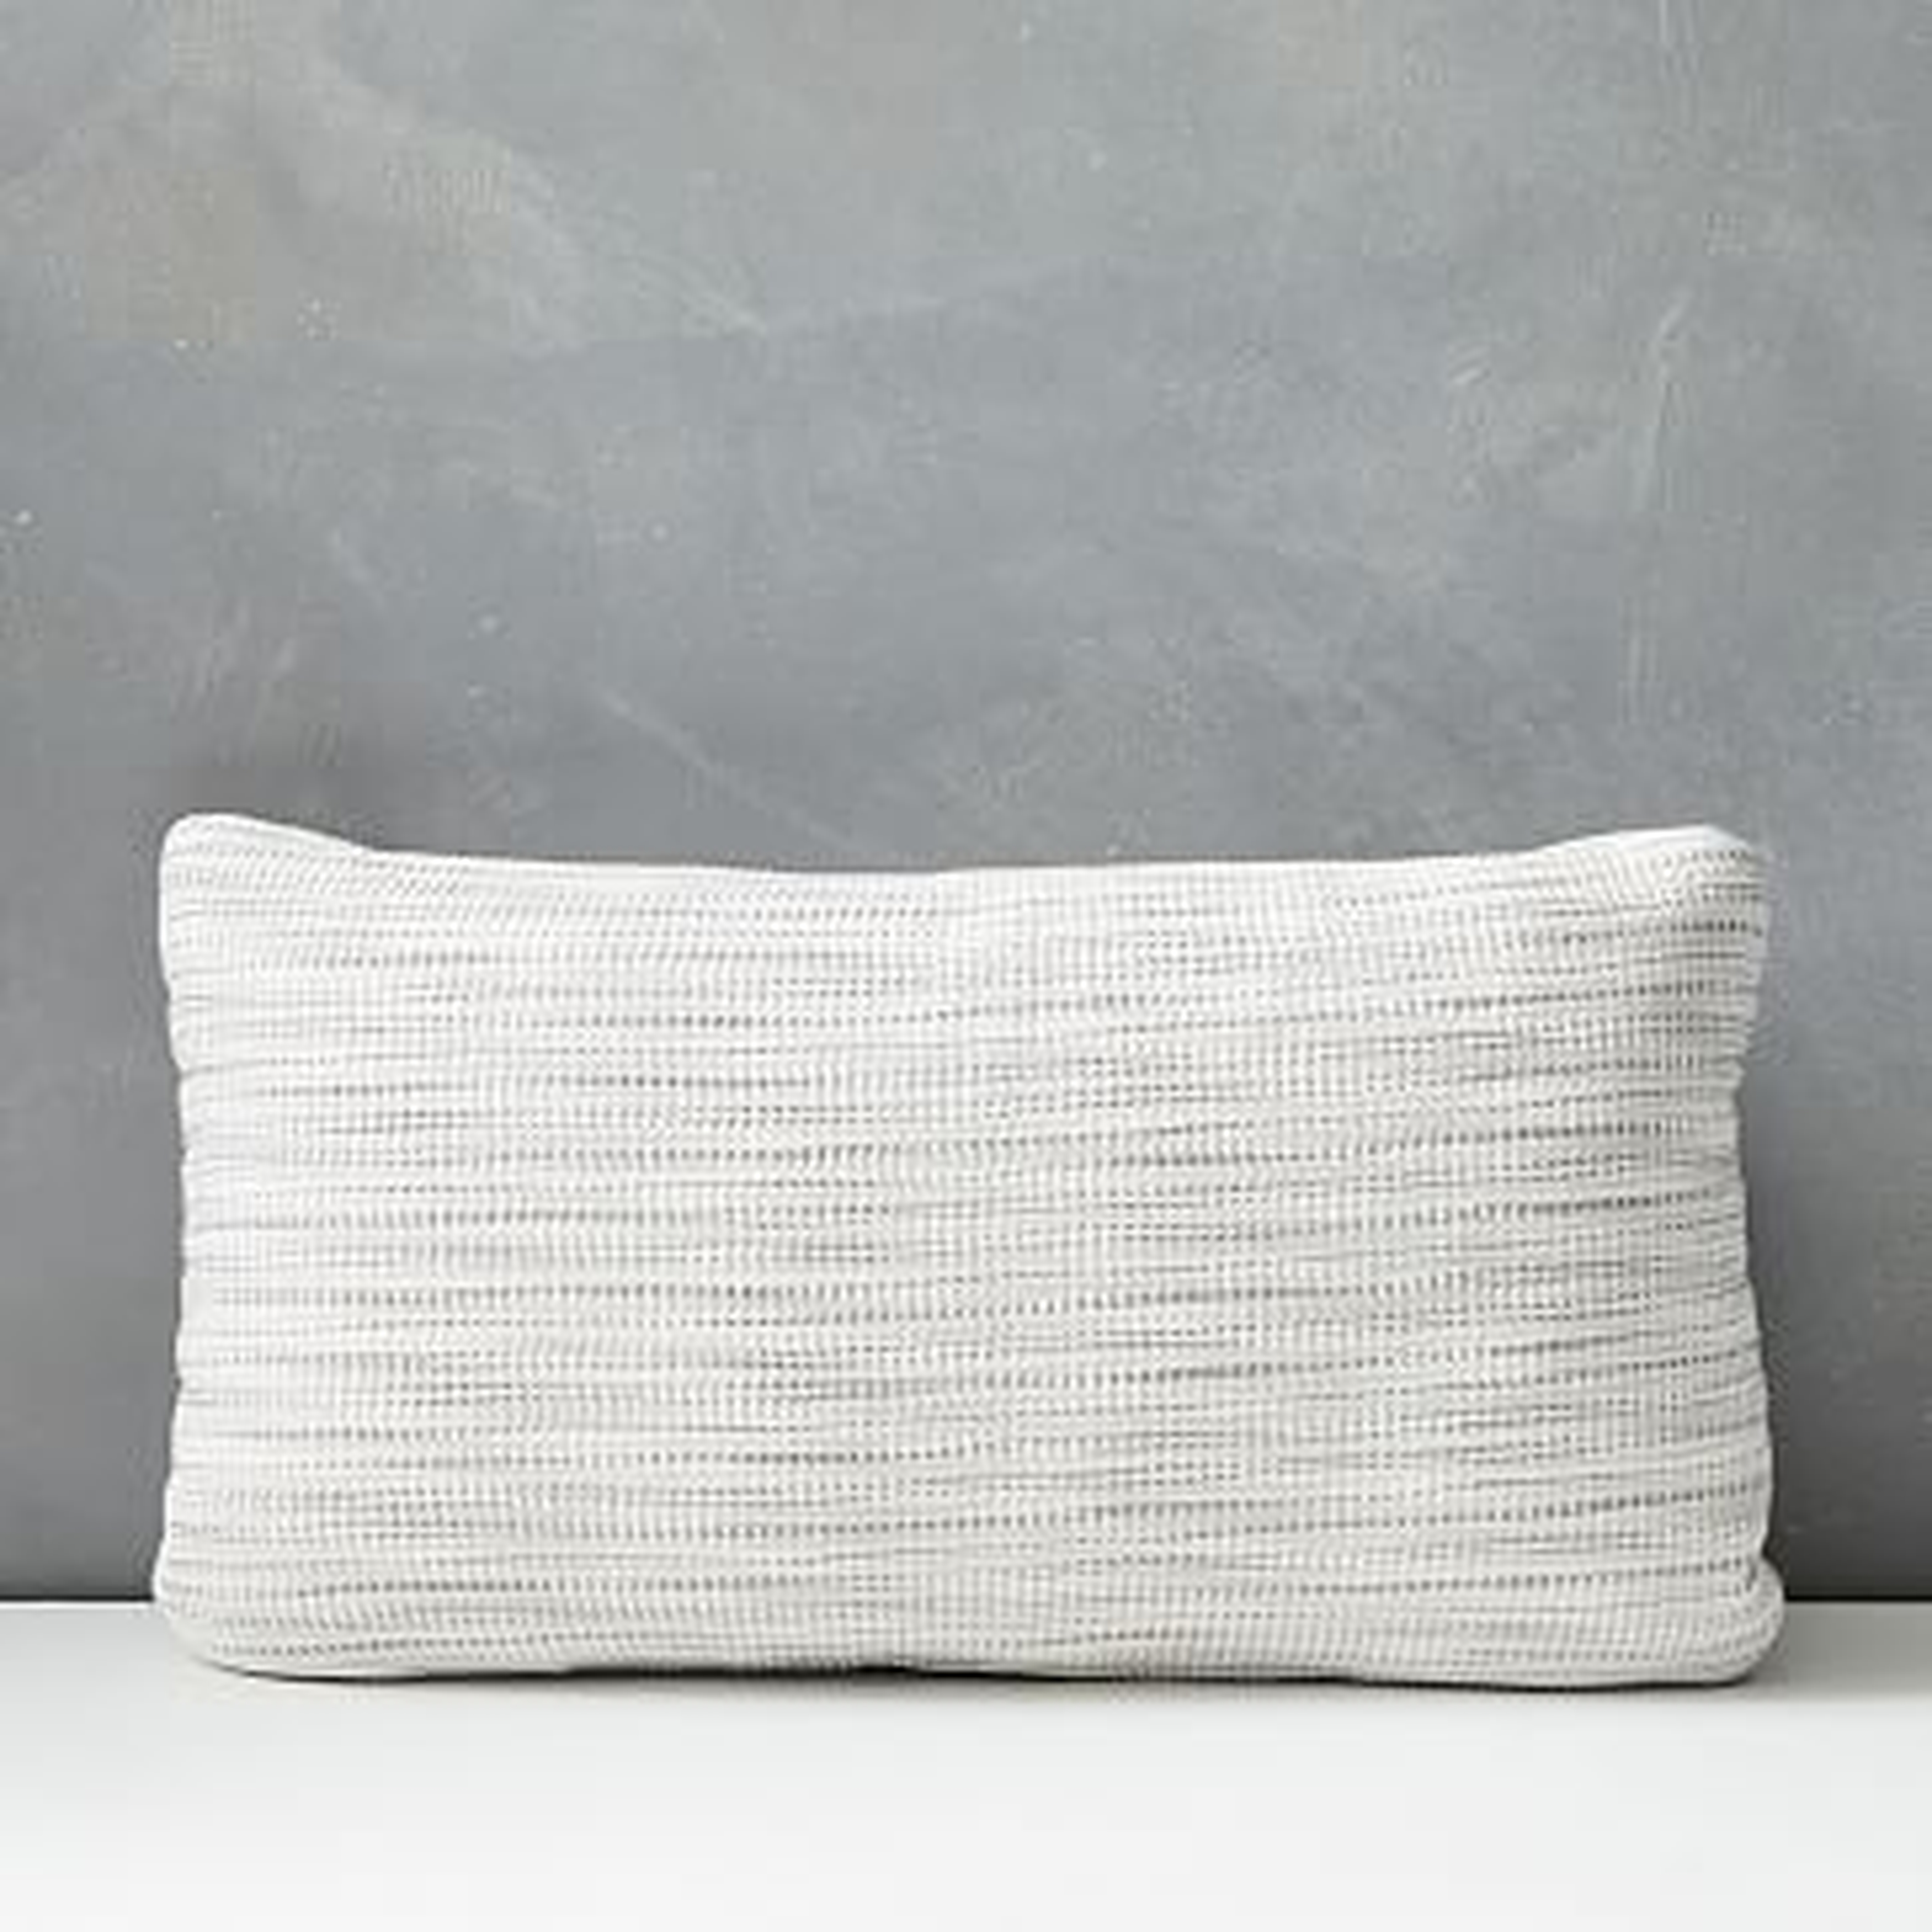 Outdoor Striated Pillow, 12"x21", Cloudburst Gray - West Elm